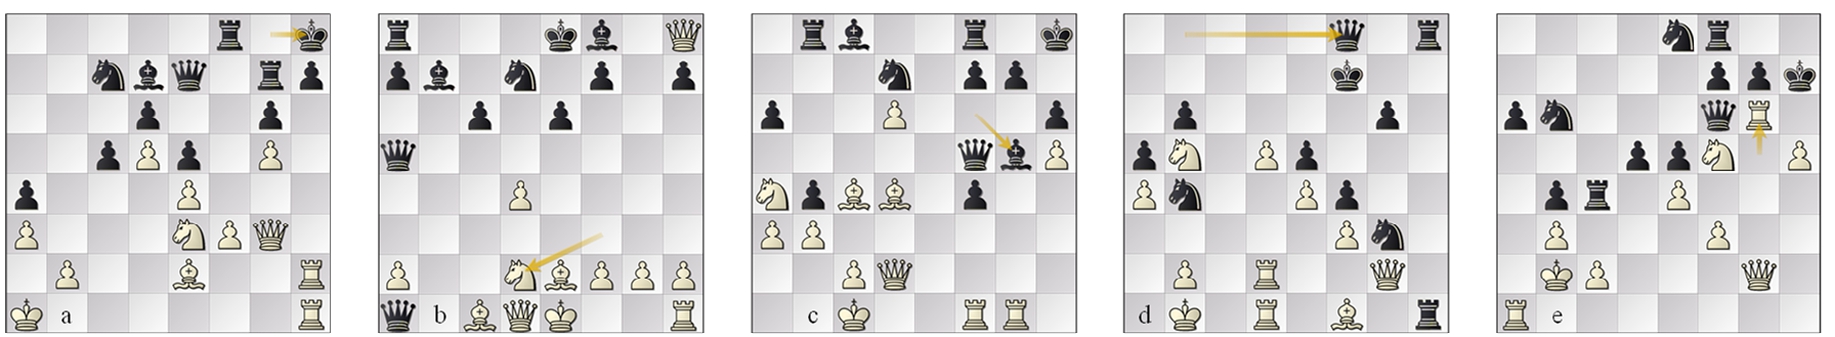 (a) game 49 p79w (Sadler, 2021a); (b) g53 p14b, the ‘4 Qs’ opening; (c) game 77 p26w; (d) game 97, p42w, evals wide apart; (e) game 99, p42b after Rg6!